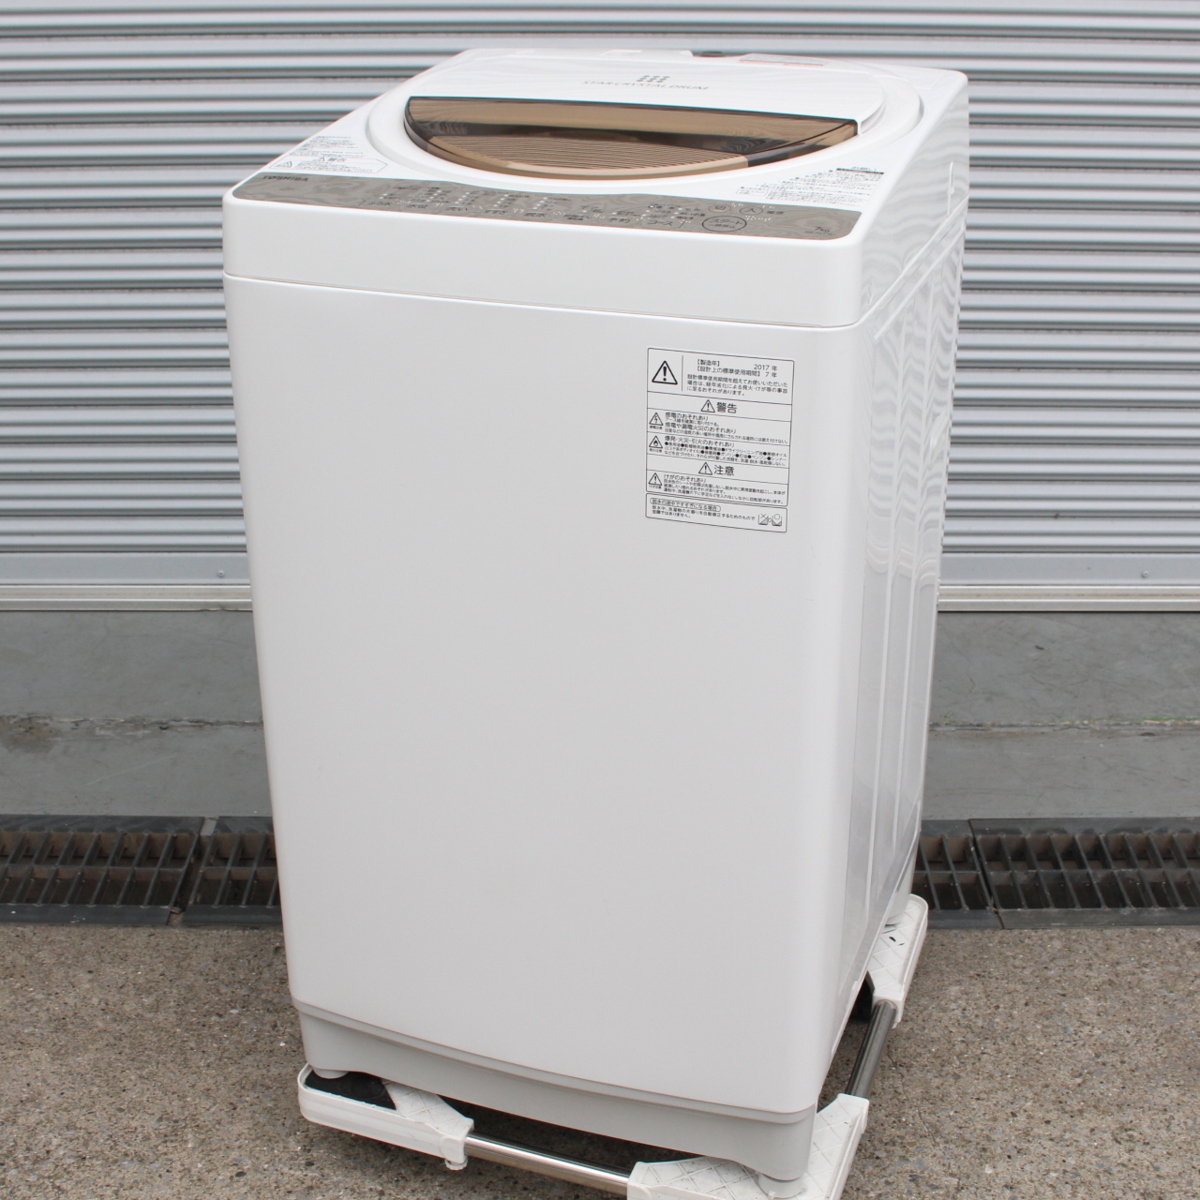 東京都新宿区にて 東芝 洗濯機 AW-7G5 2017年製 を出張買取させて頂きました。